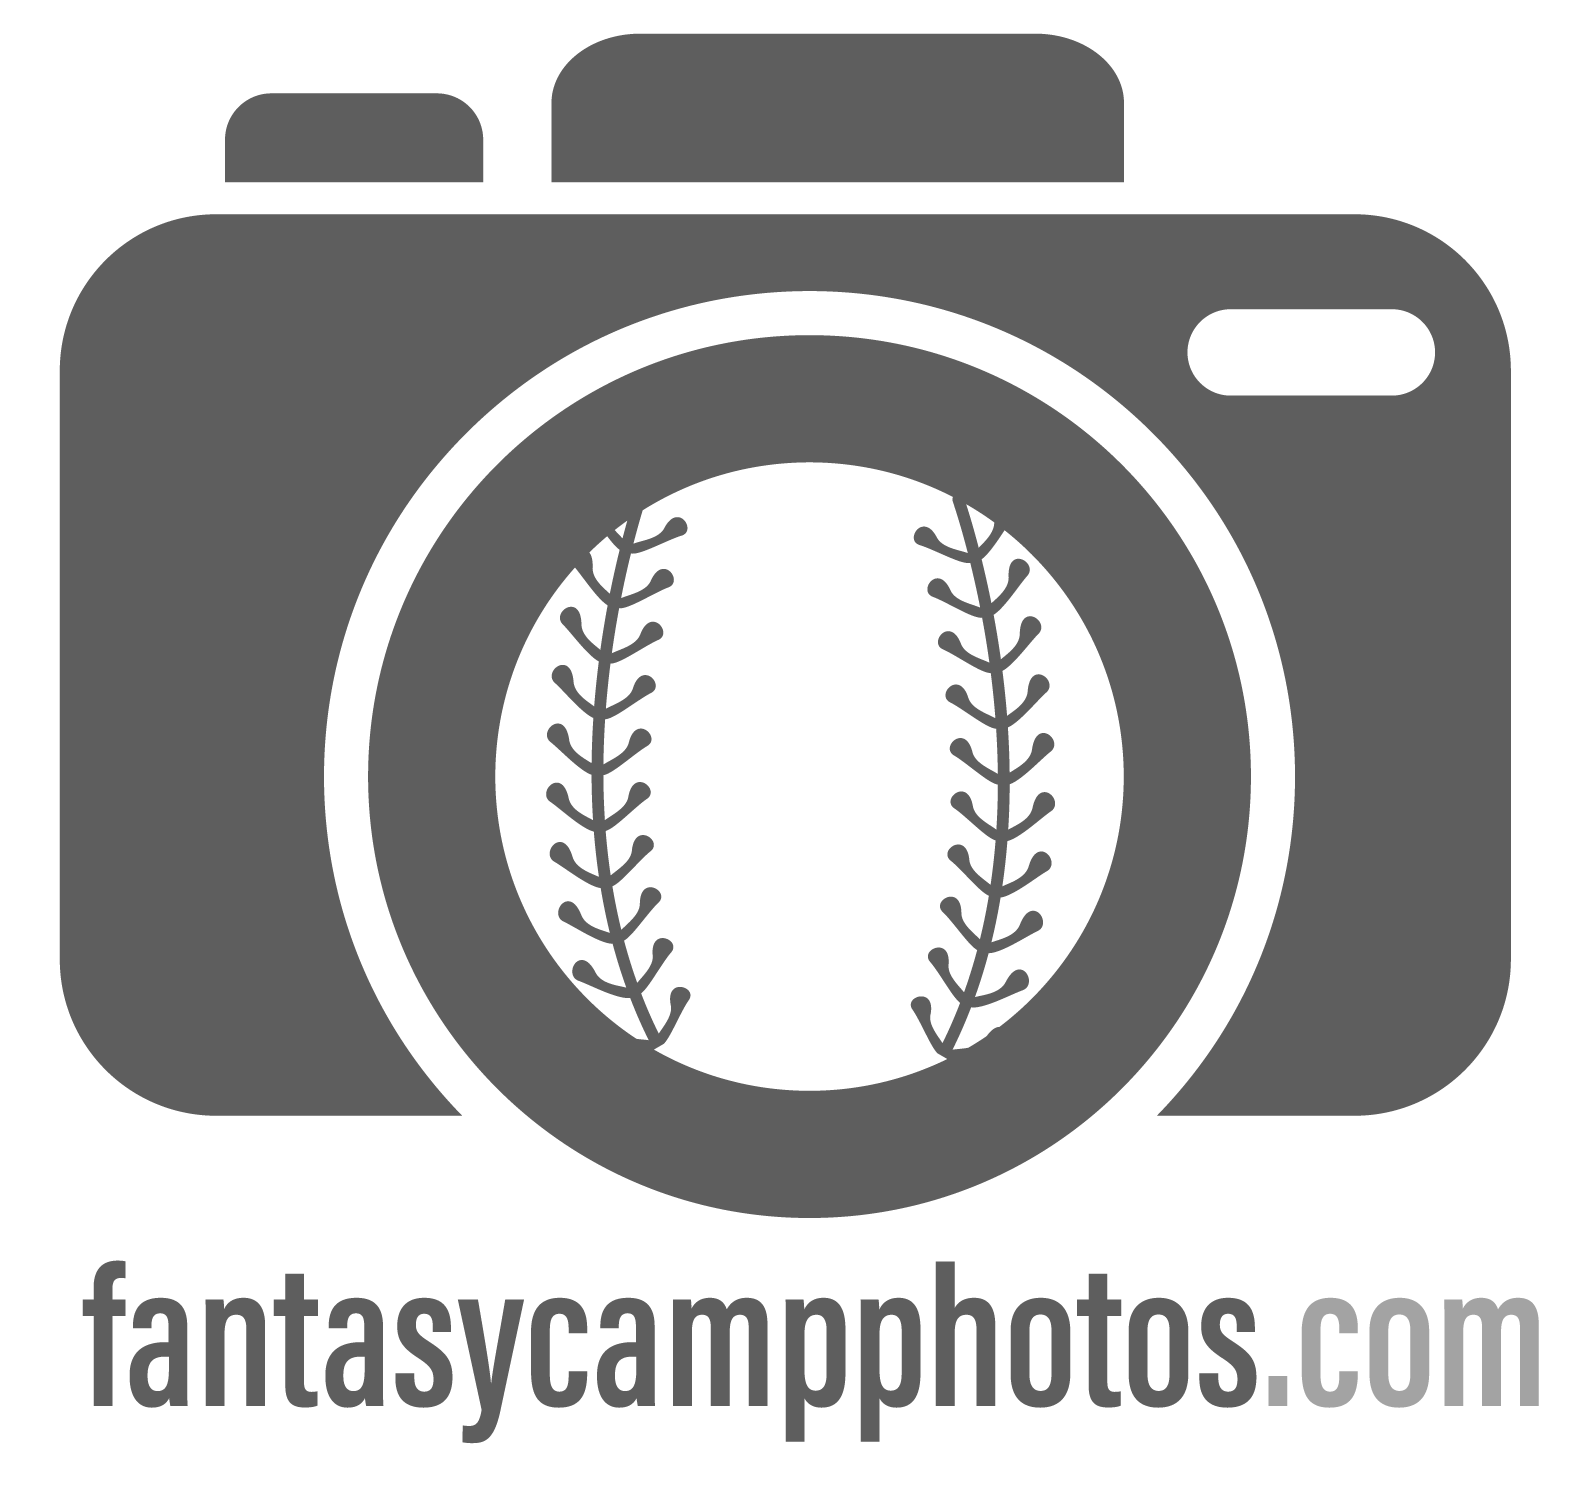 fantasycampphotos.com